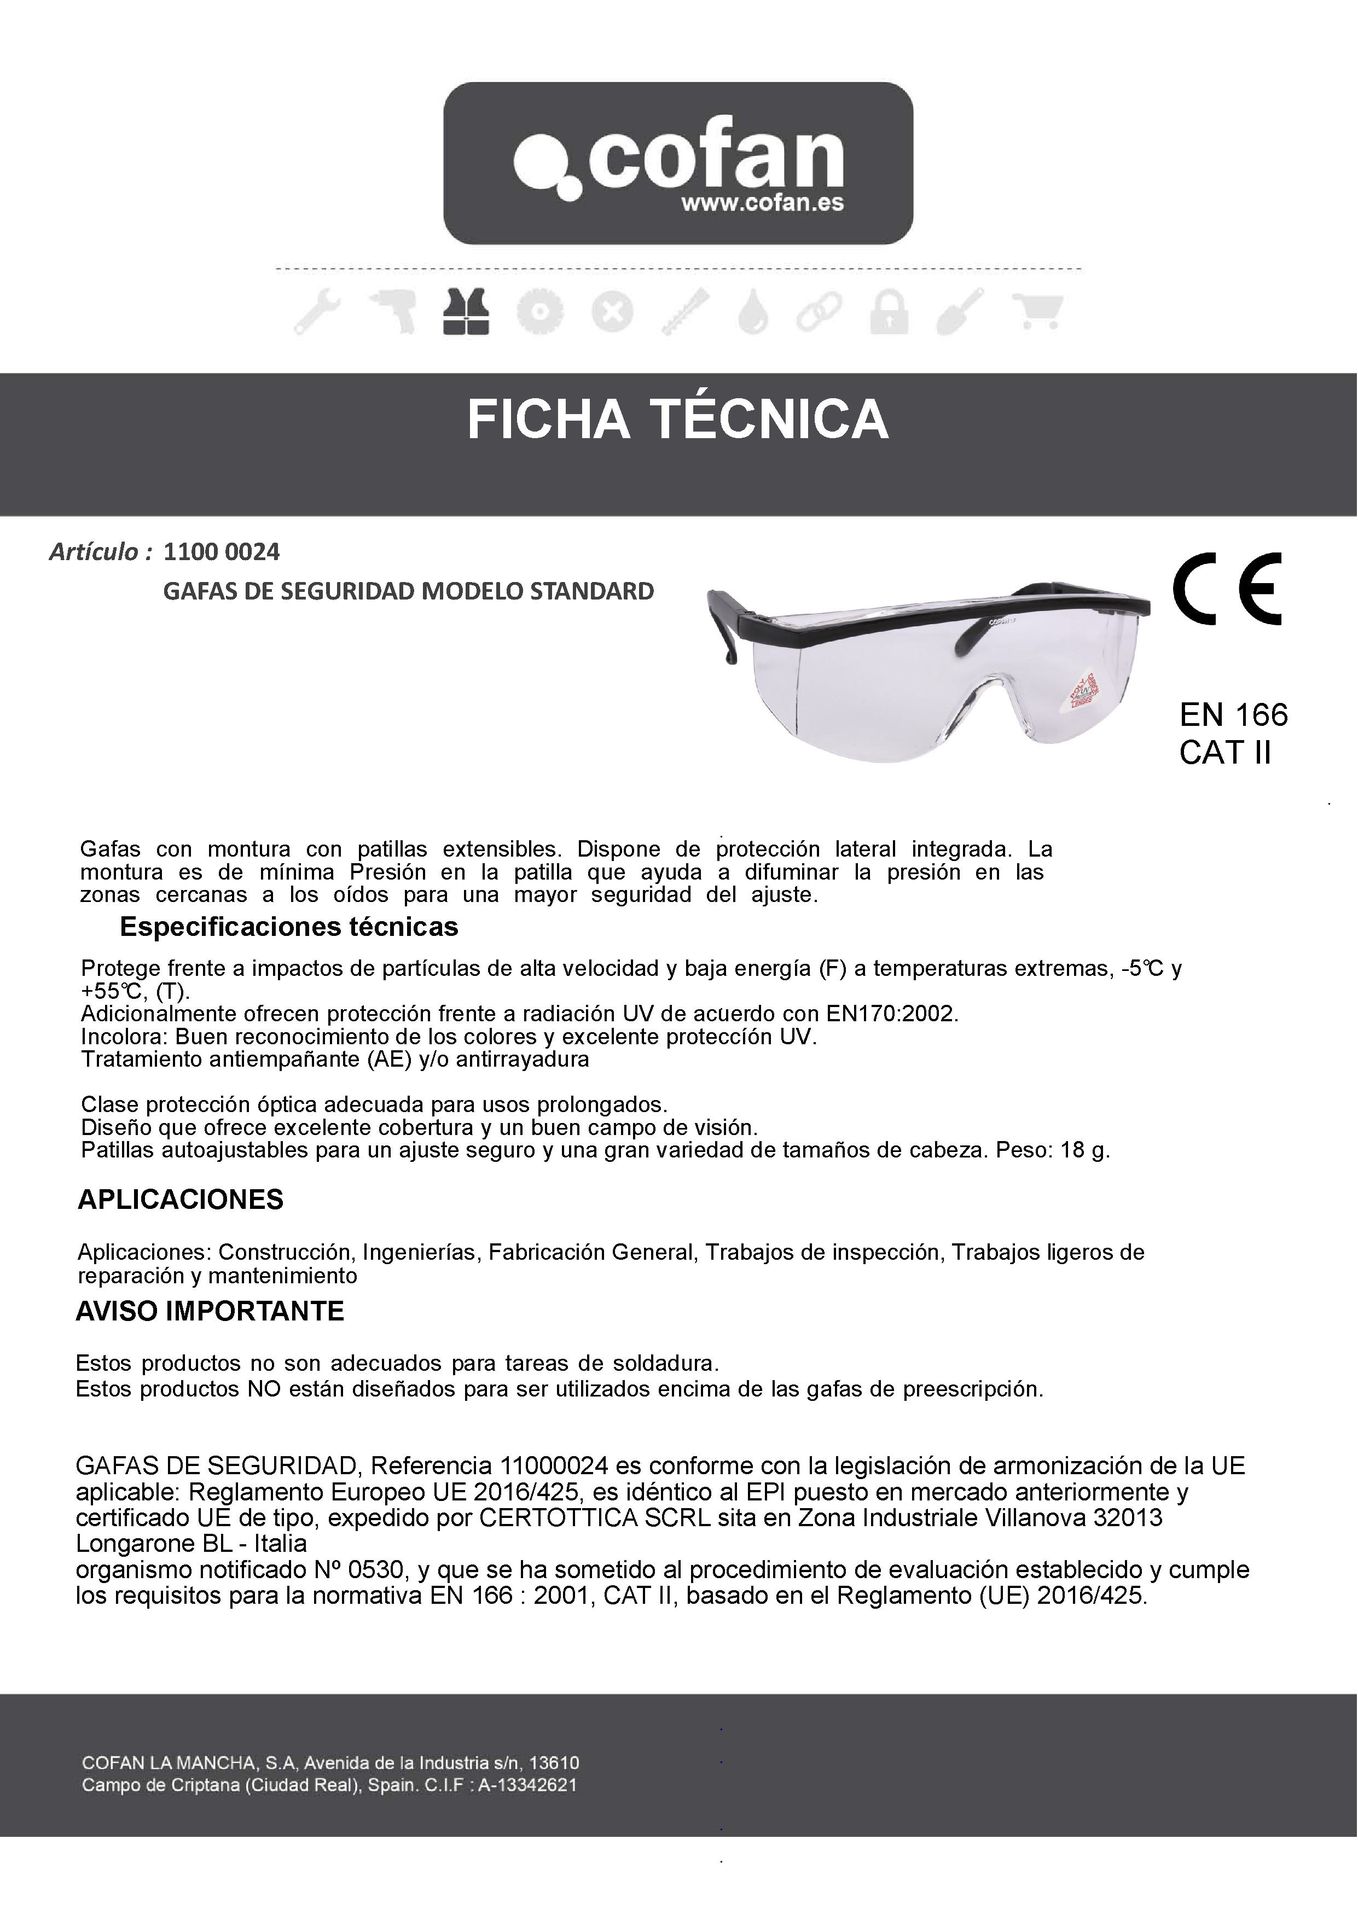 Ficha Técnica de Gafas de Seguridad Contra Impactos Ref. 11000024